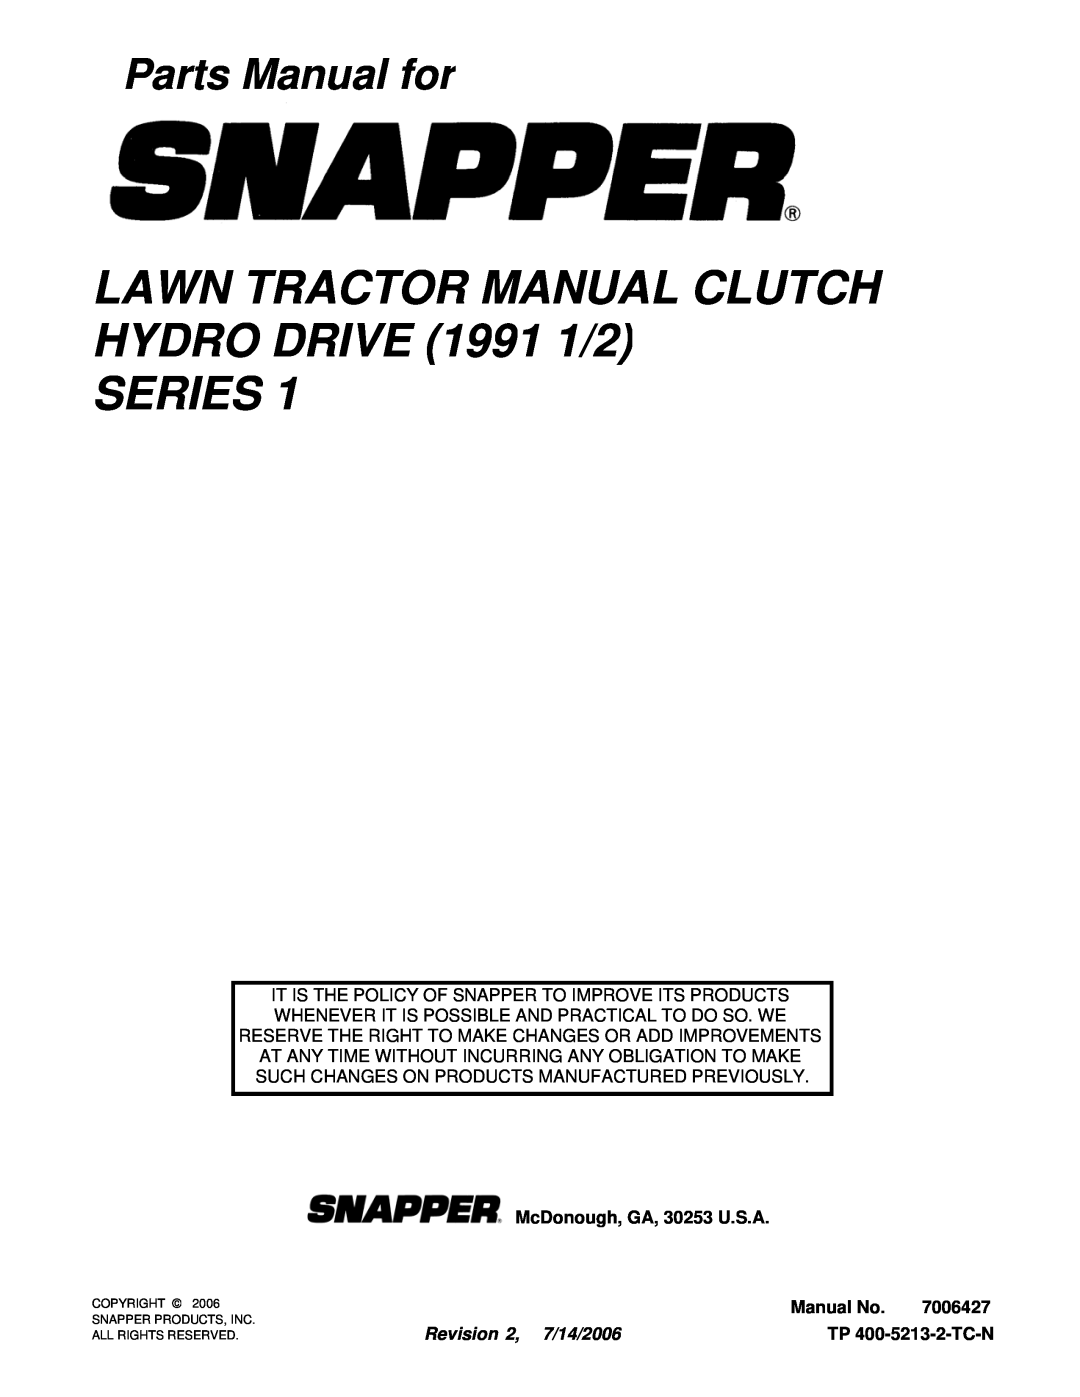 Snapper LT140H411KV LAWN TRACTOR MANUAL CLUTCH HYDRO DRIVE 1991 1/2, Series, Parts Manual for, McDonough, GA, 30253 U.S.A 